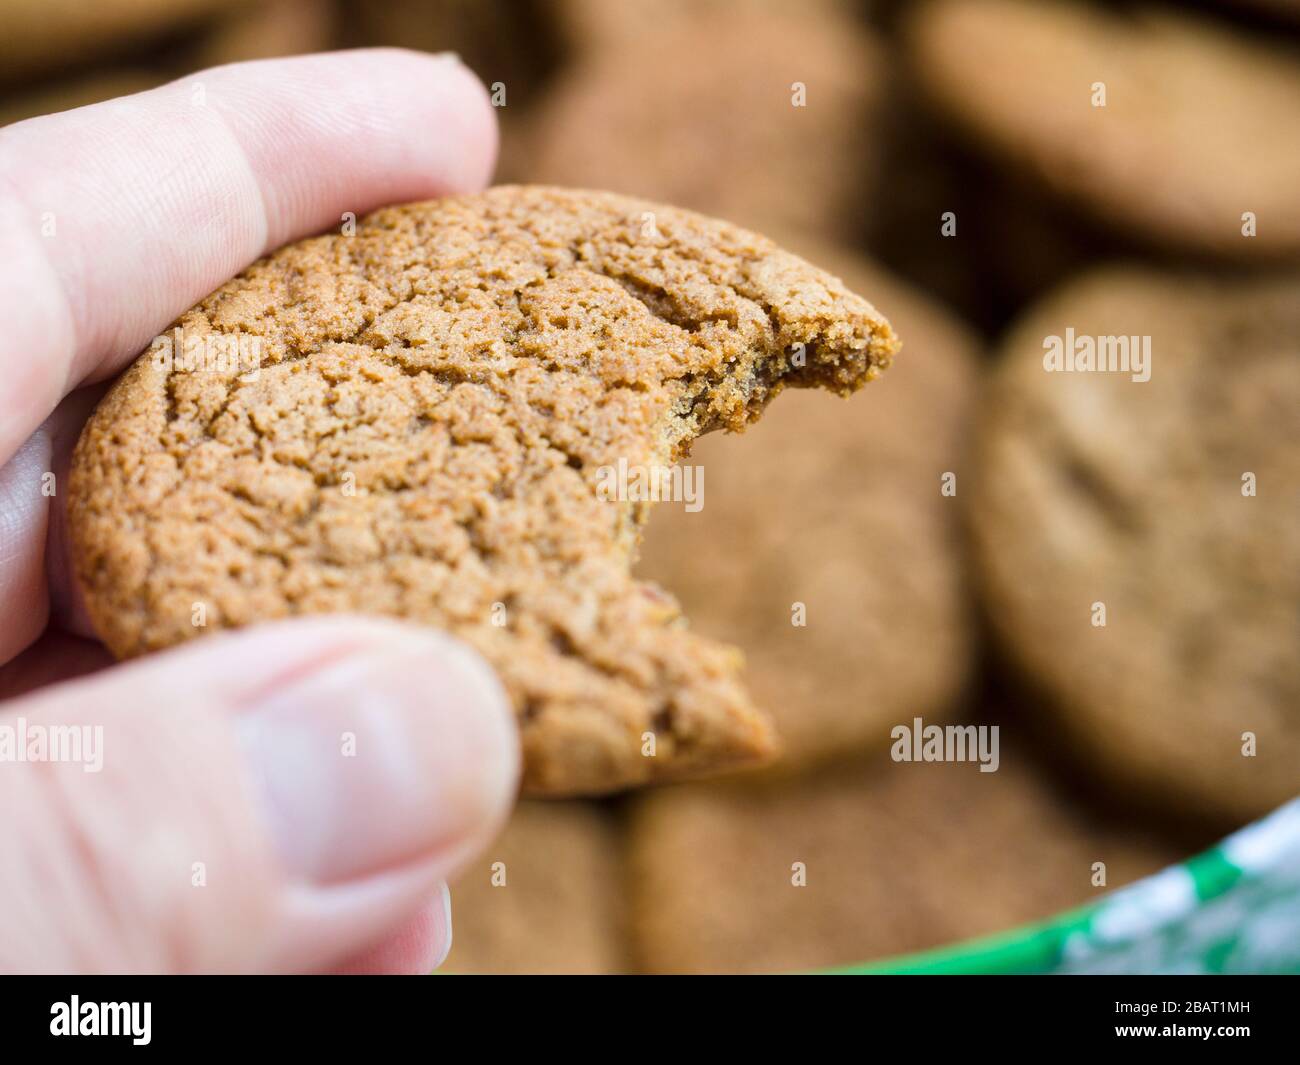 Ein Ingwer-Schnappkeks mit einem Bissen heraus: Eine Hand hält einen nur gebissenen Ingwer-Schnappkeks. Weitere Cookies stehen im Hintergrund. Stockfoto